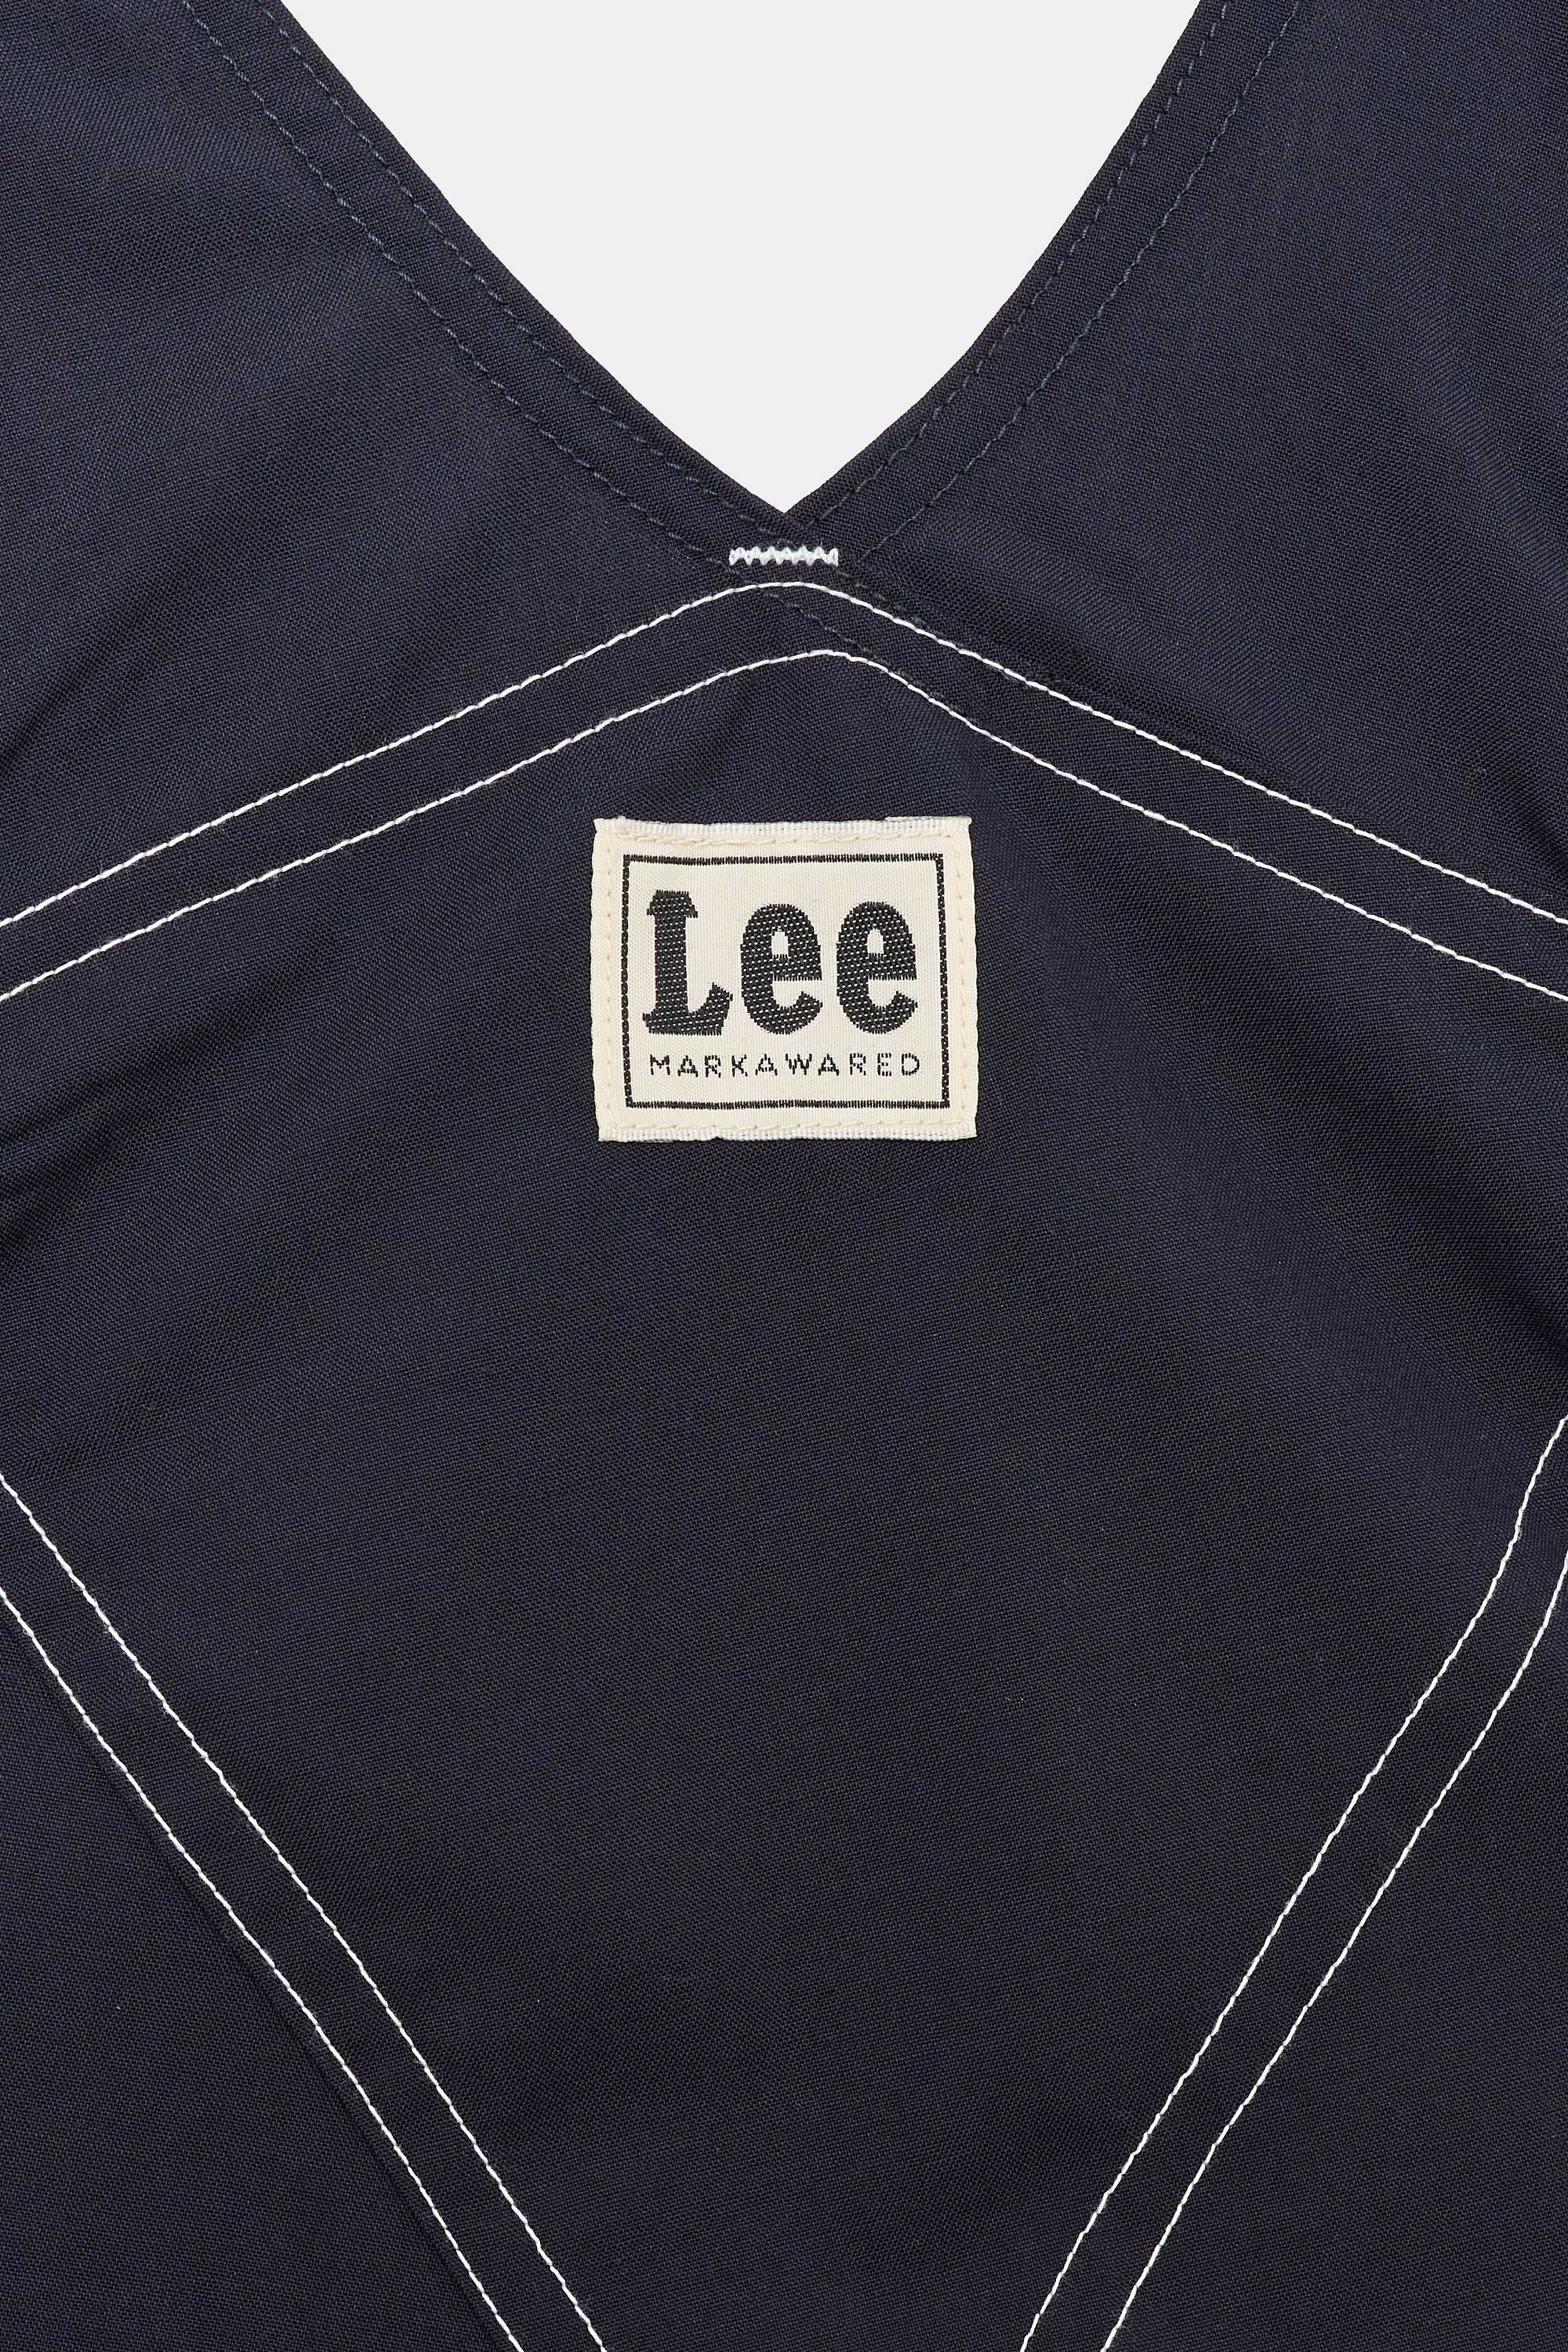 Lee × MARKAWARE for EDIFICE オーバーオール, Navy